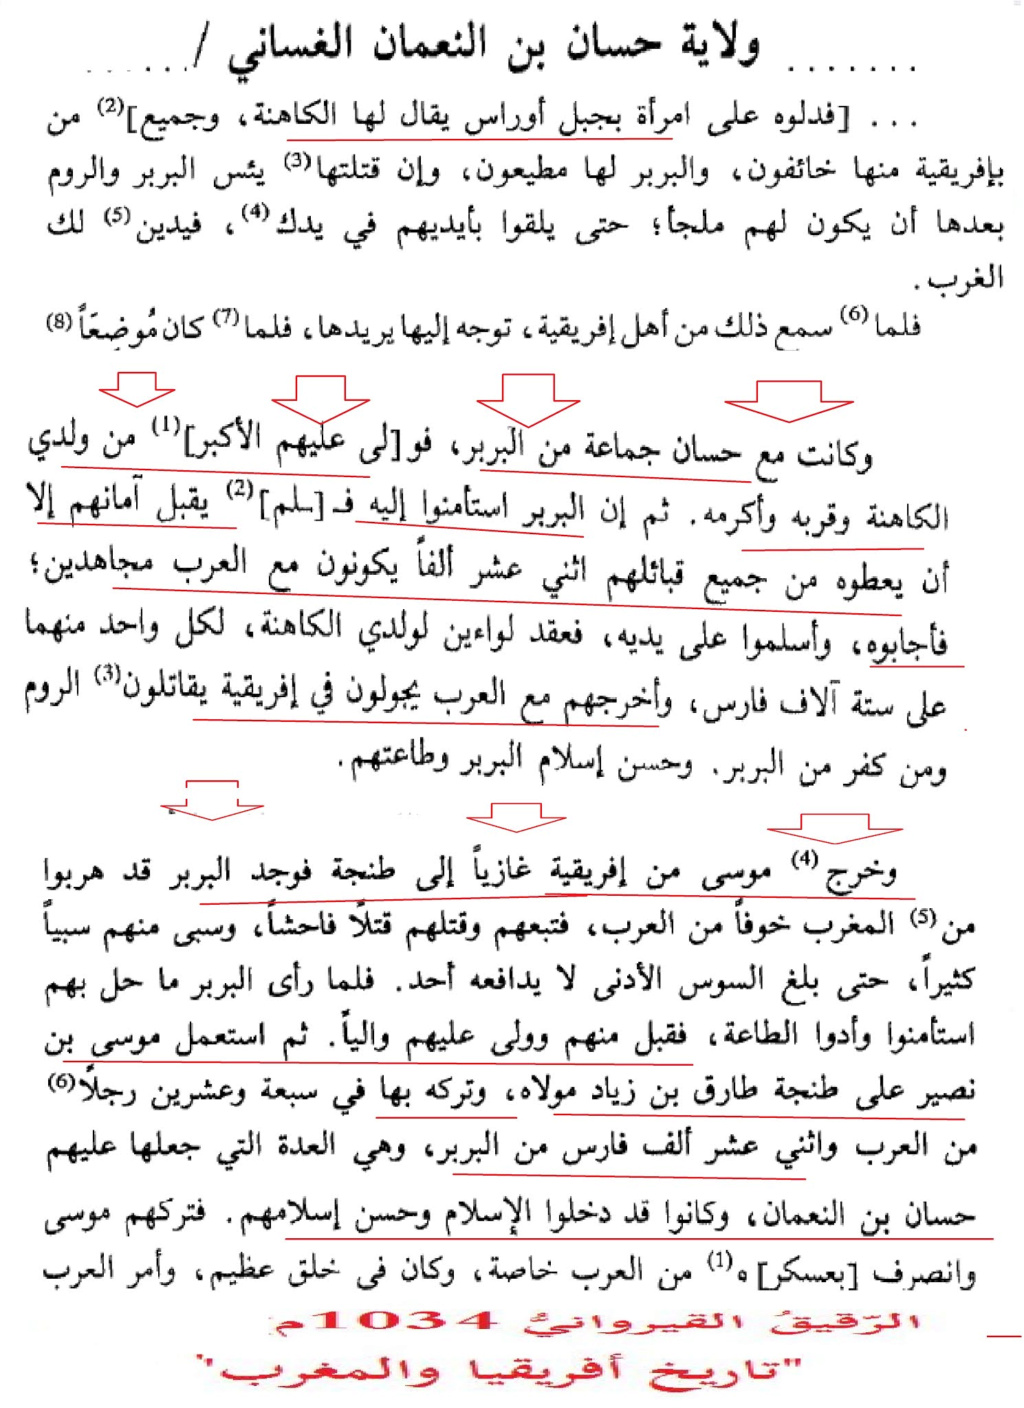 أصول طارق بن زياد الأمازيغية على ضوء النصوص العريية الاسلامية والإسبانية 1-----27